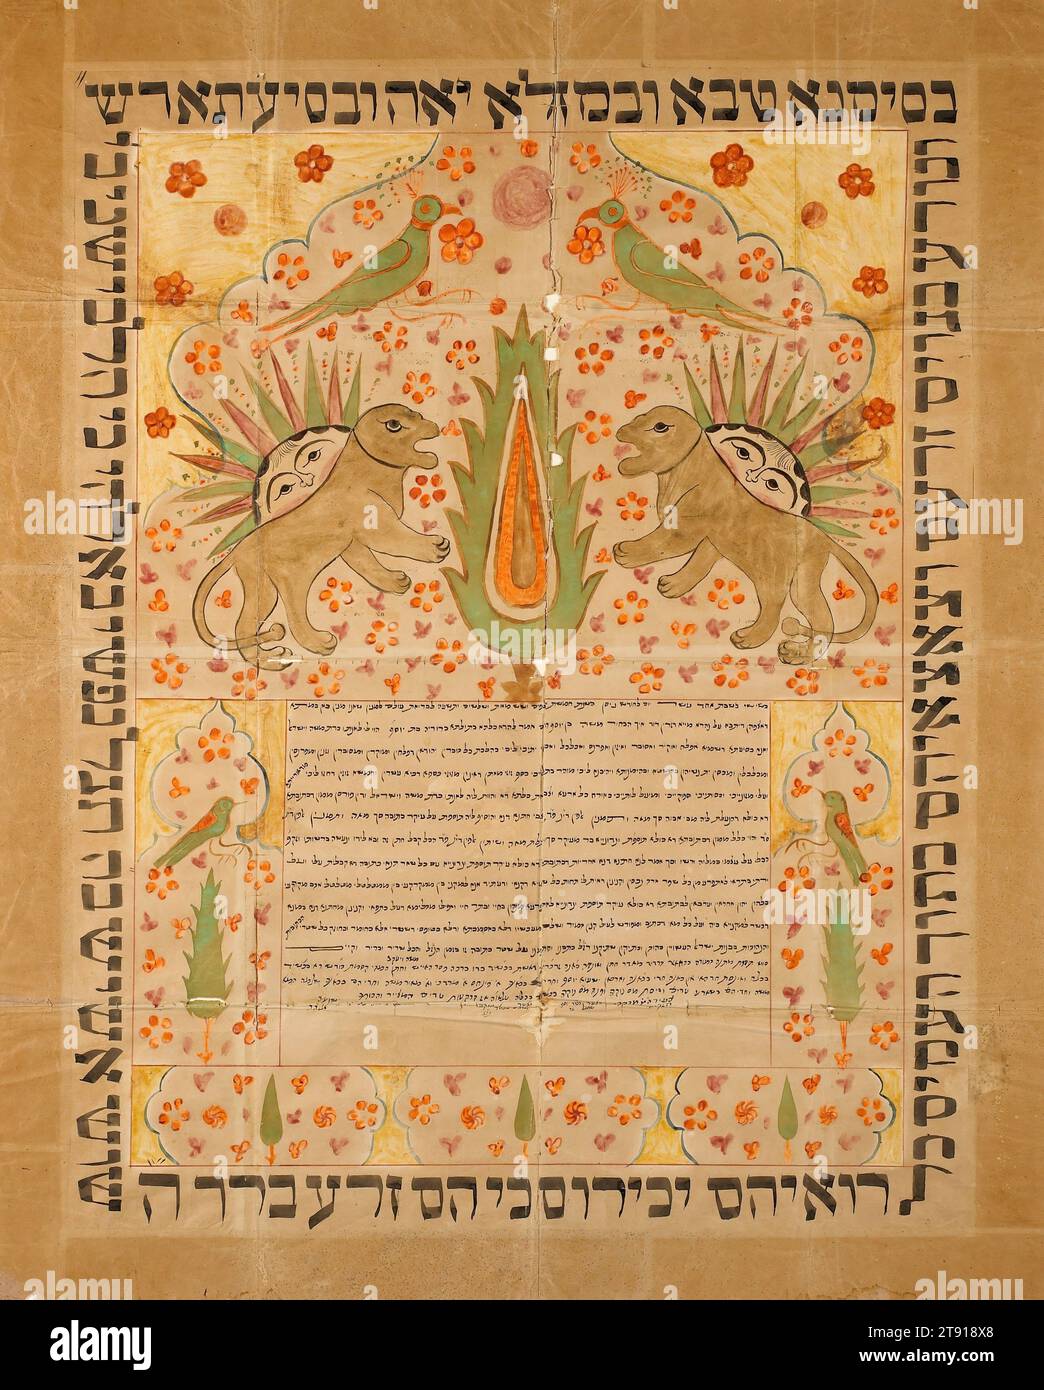 Ketubah (contratto di matrimonio), 1879, 27 3/8 x 1/4 poll. (69,53 x 53,98 cm) (foglio)31 1/8 x 25 1/4" (79,1 x 64,1 cm) (con bordo aggiunto), carta, inchiostro, pigmenti, Iran, questo ketubah, o contratto di matrimonio, fu fatto per un matrimonio che ebbe luogo a Isfahan, in Persia (oggi Iran) il 4 aprile 1879 (11 Nisan, 5639 sul calendario ebraico). La sposa era Bruriah, figlia di Giuseppe, e lo sposo era Moshe, figlio di Giuseppe. Il leone e il sole sono antichi simboli persiani risalenti al periodo sasanide (226-651 a.C.) e sono spesso visti nei contratti di matrimonio del XIX e XX secolo a Isfahan Foto Stock